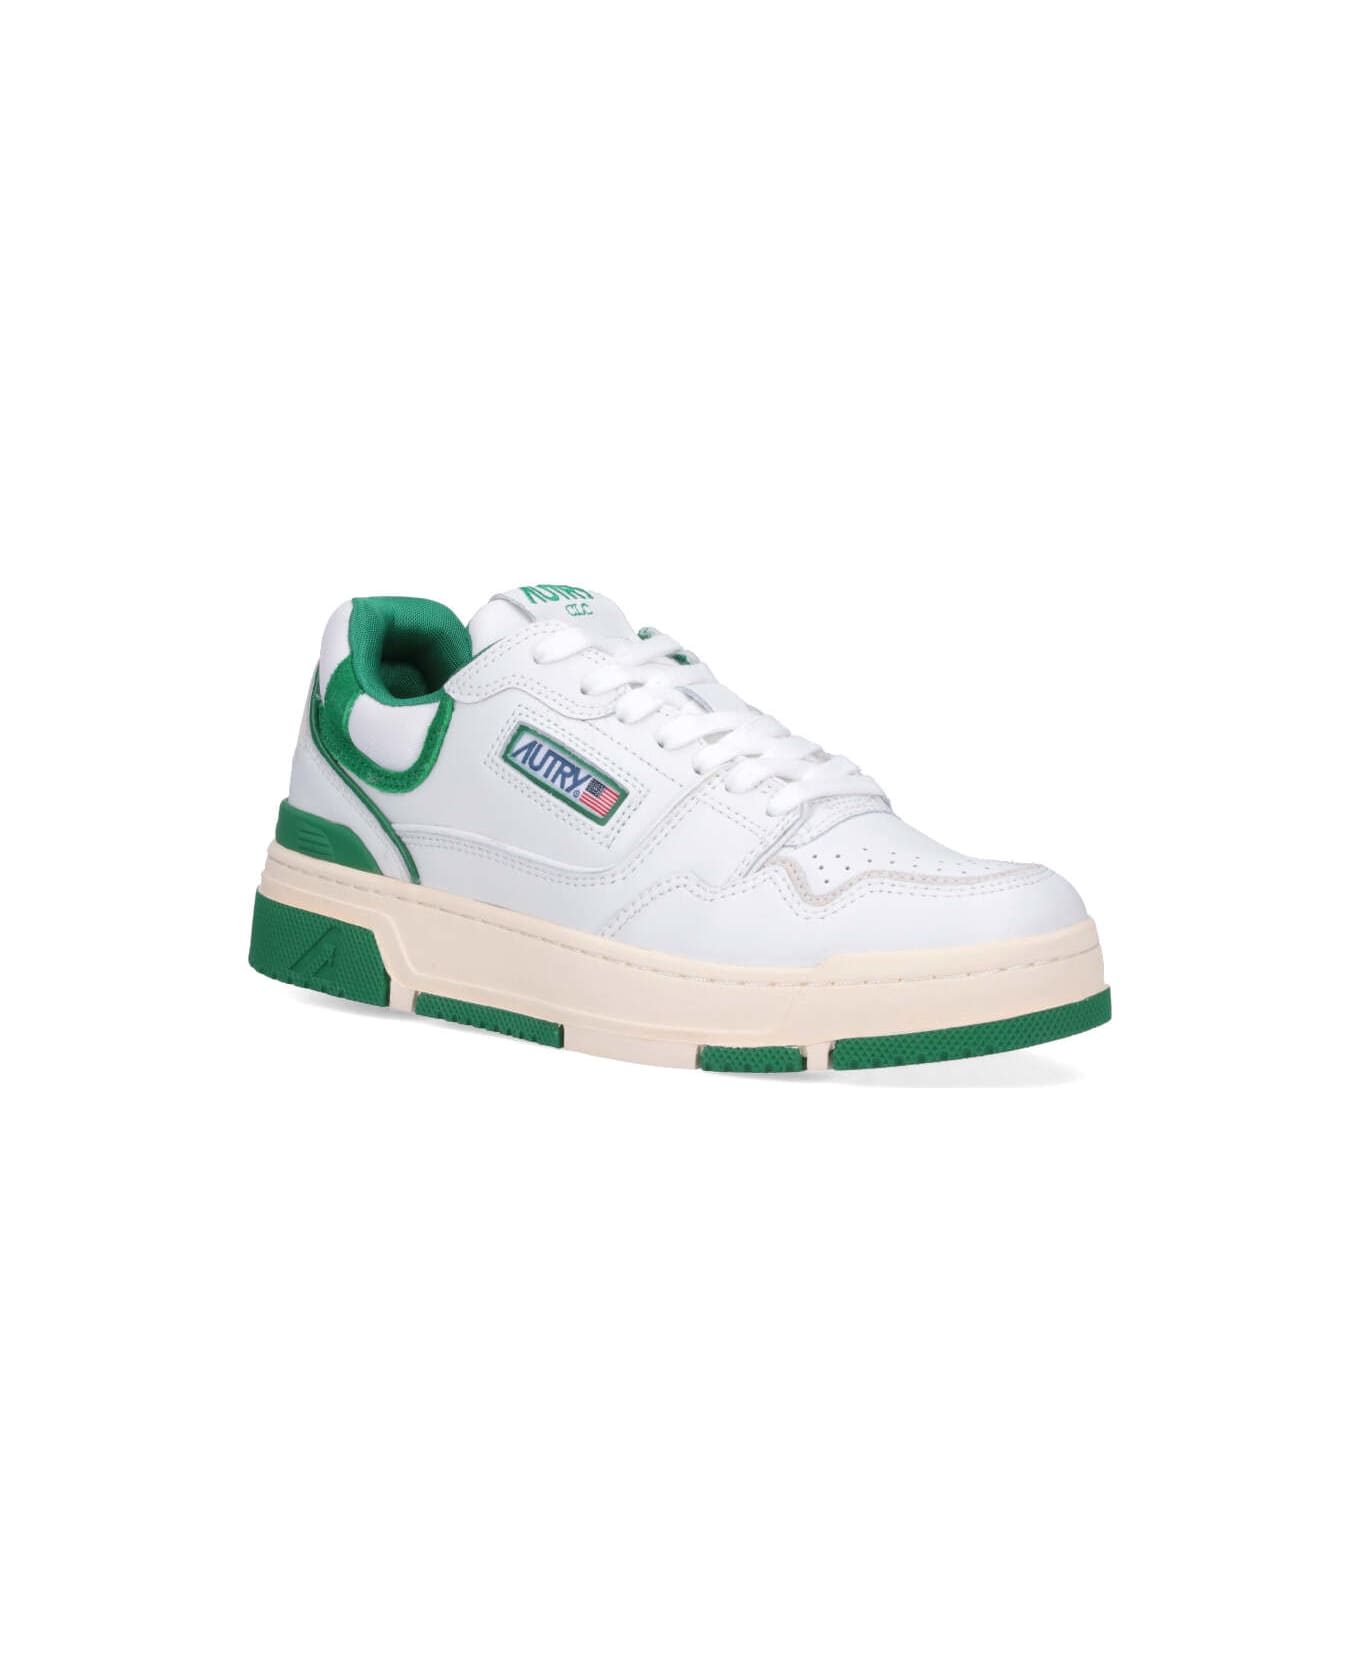 Autry Clc Sneakers - Verde